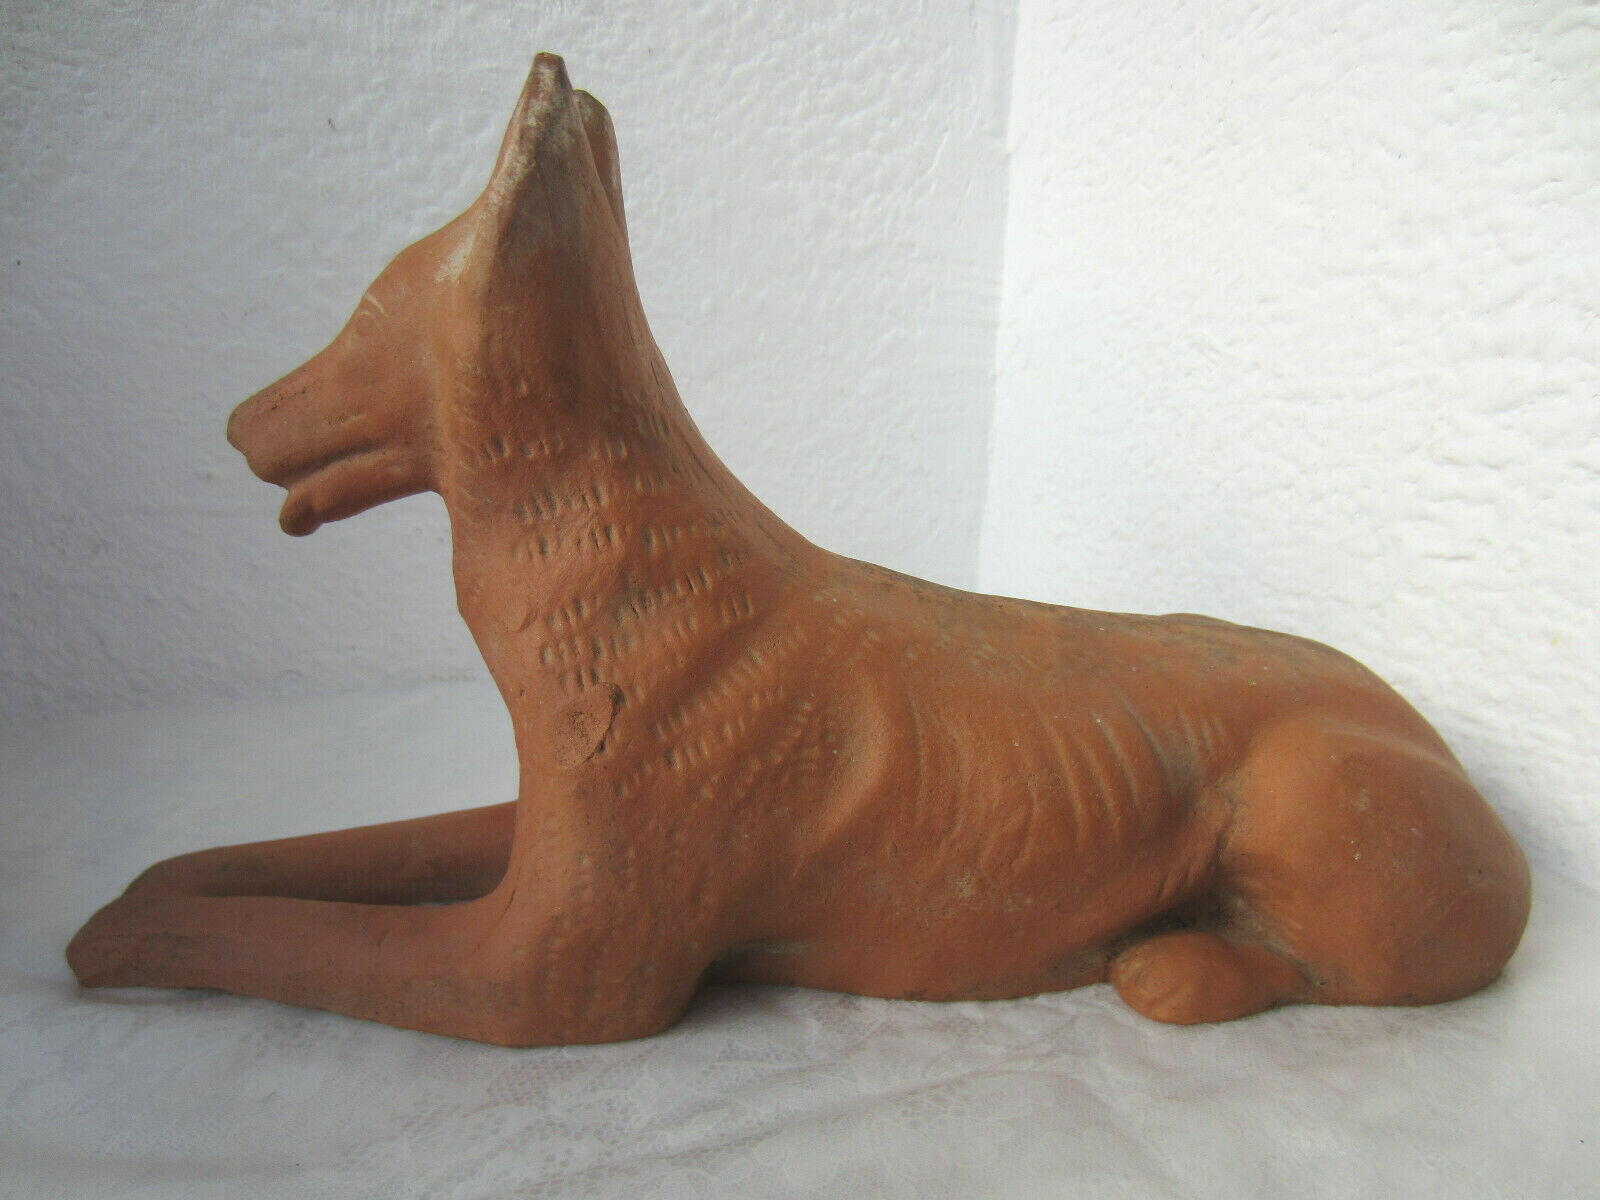 11.5" Antique unglazed ceramic pottery dog animal figure figurine statuette, old